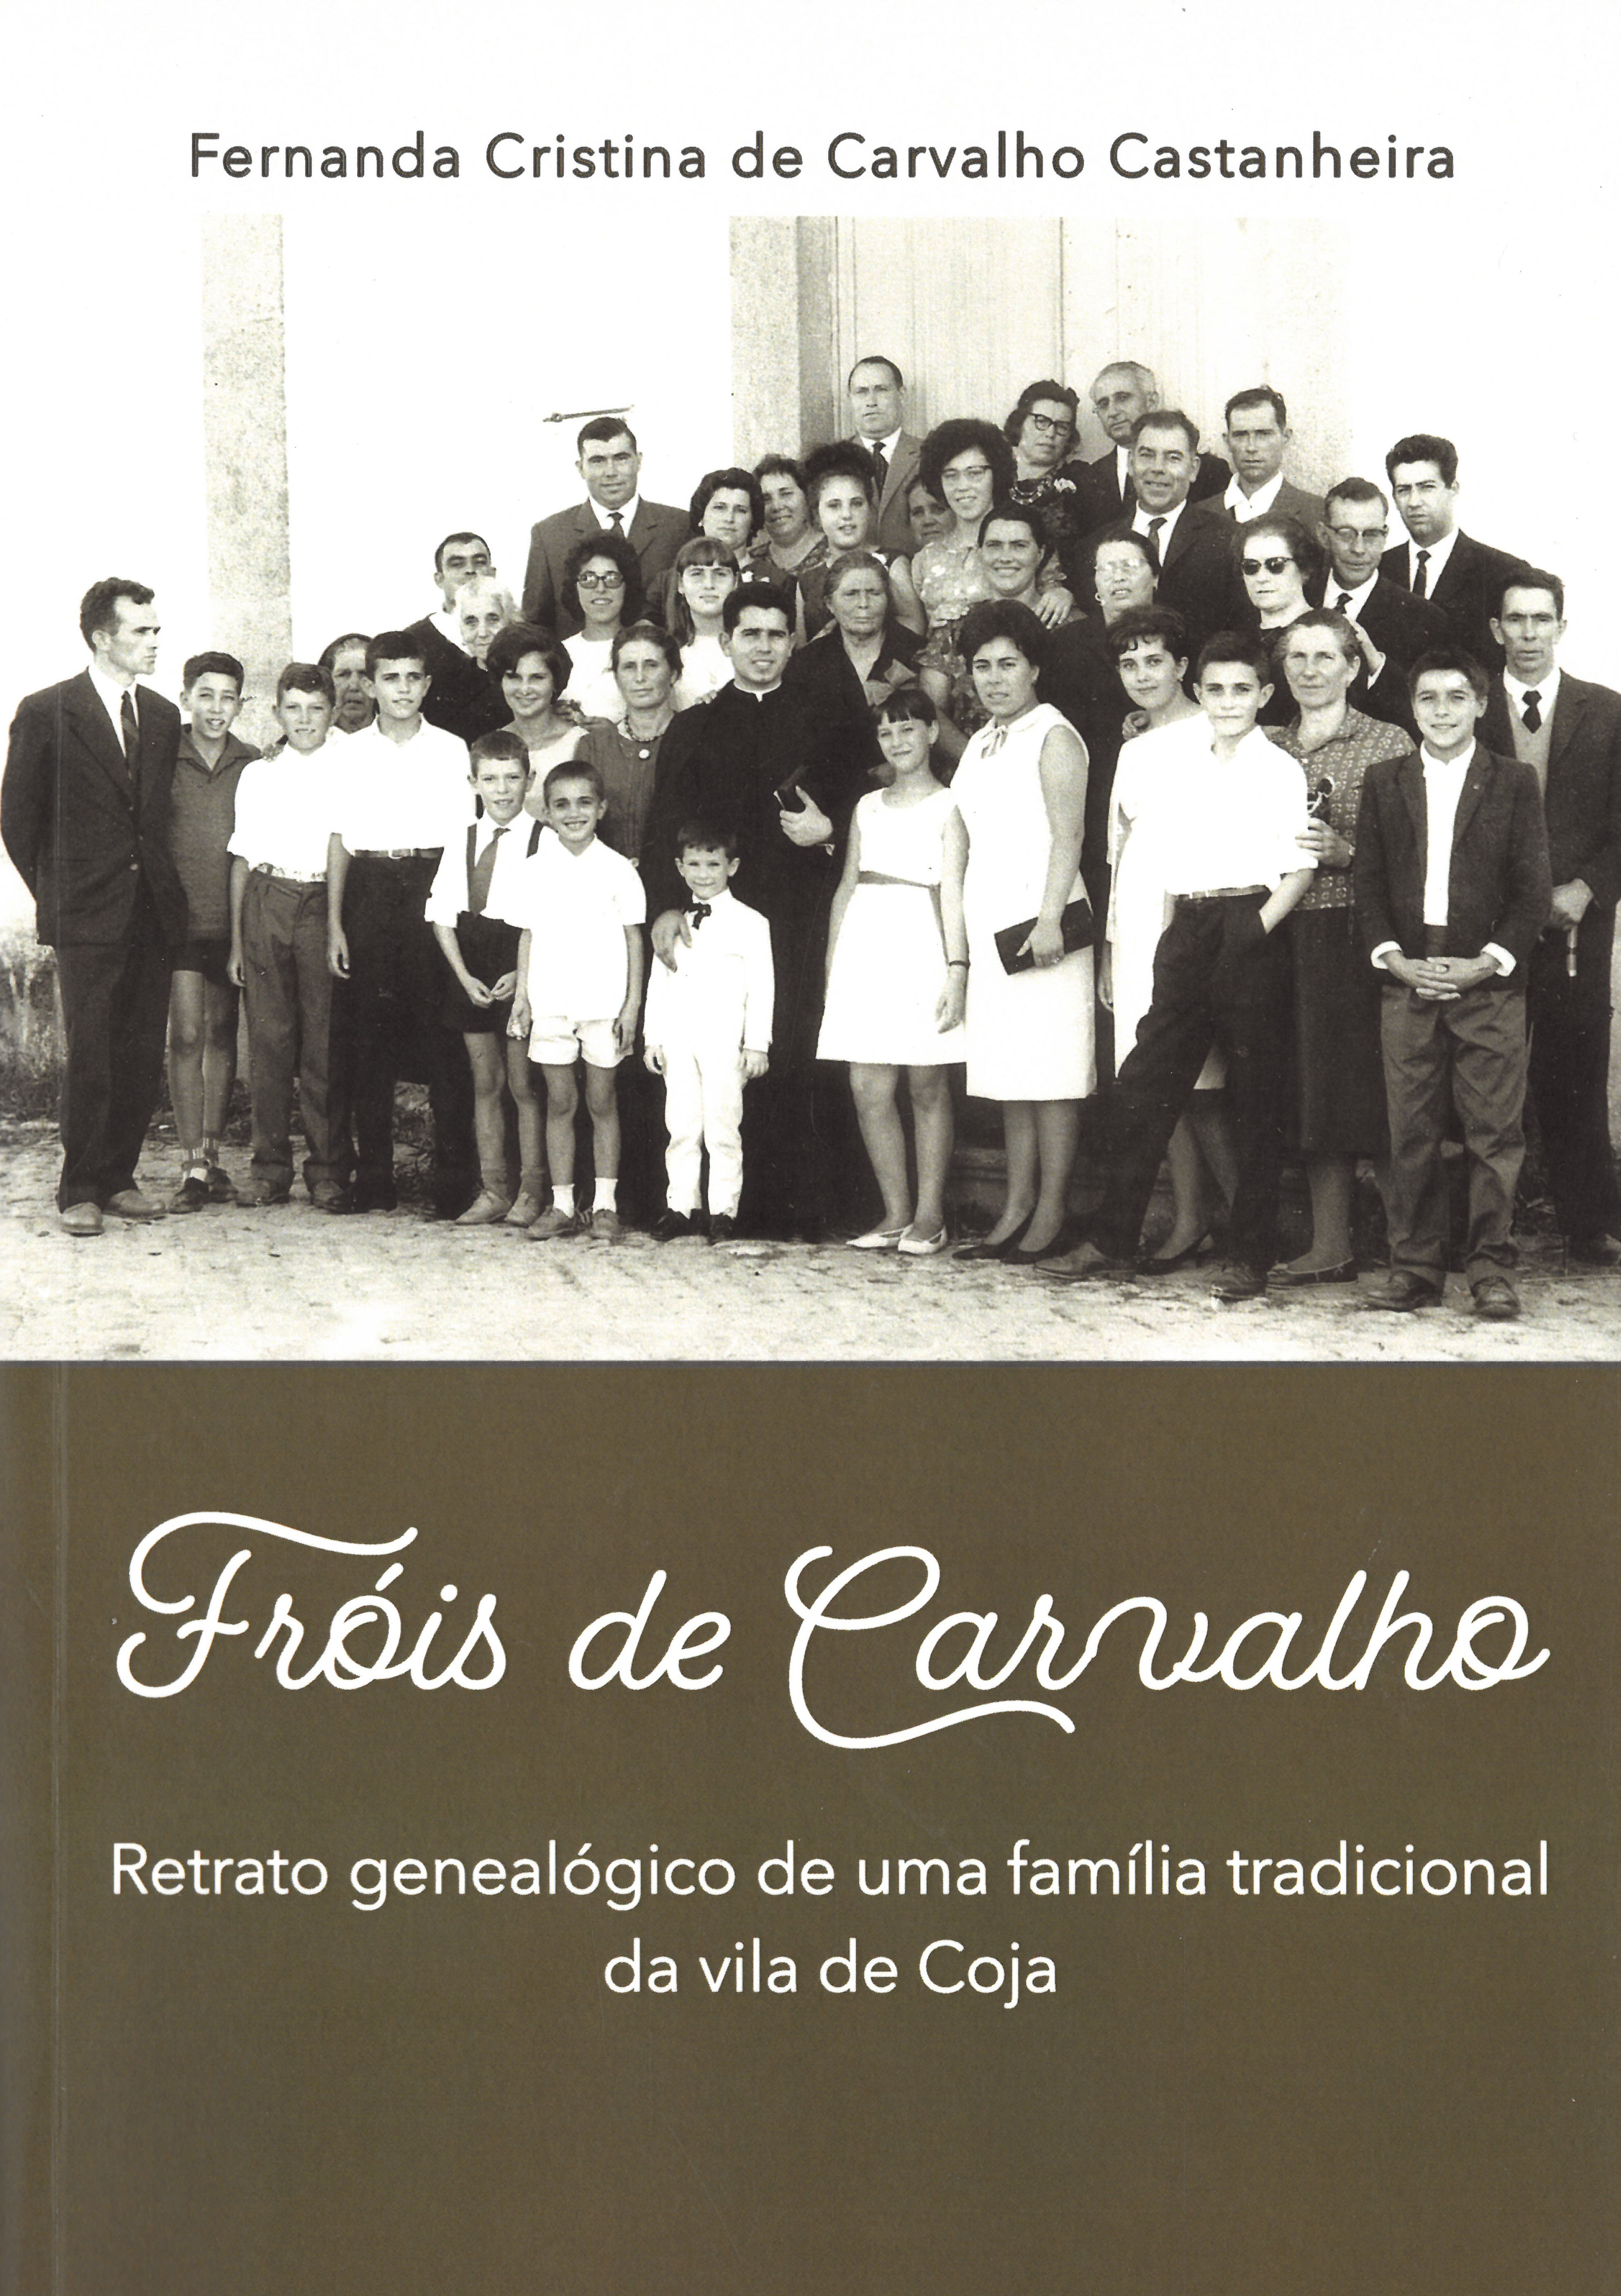 Capa Livro Frois Carvalho